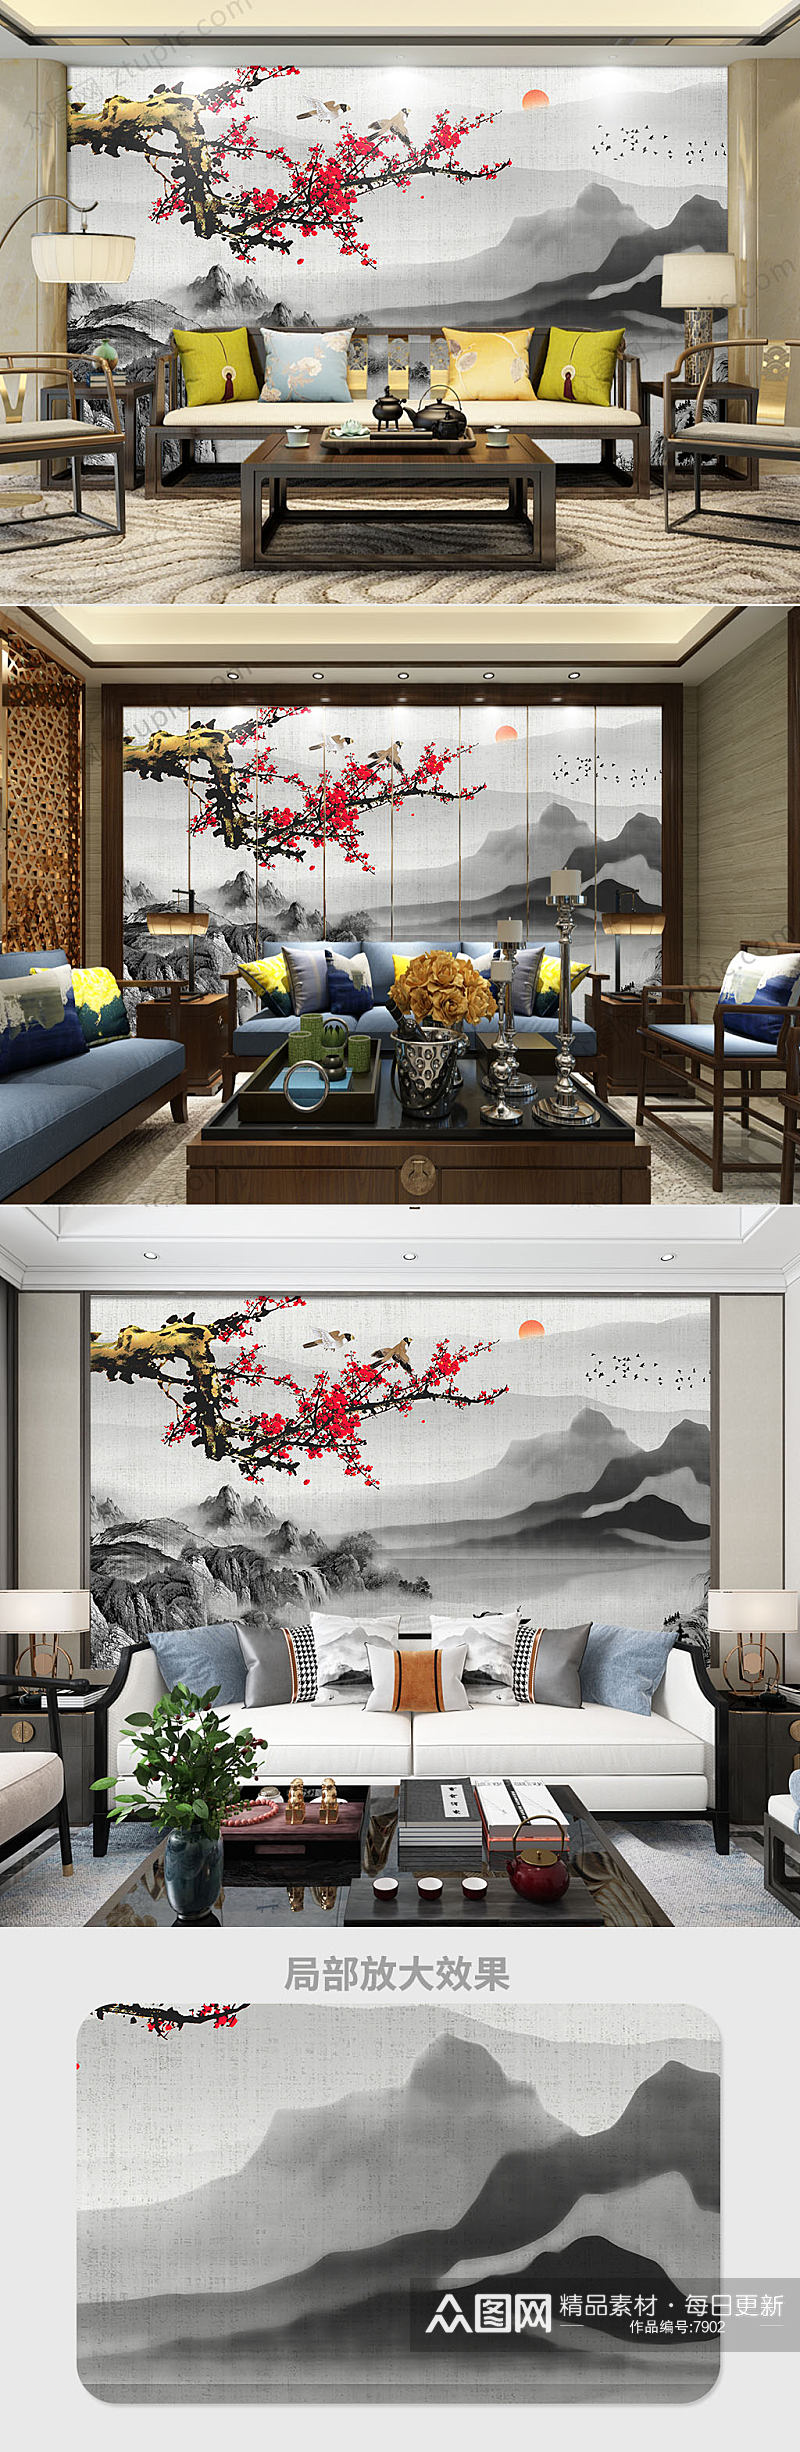 中式花鸟背景墙素材